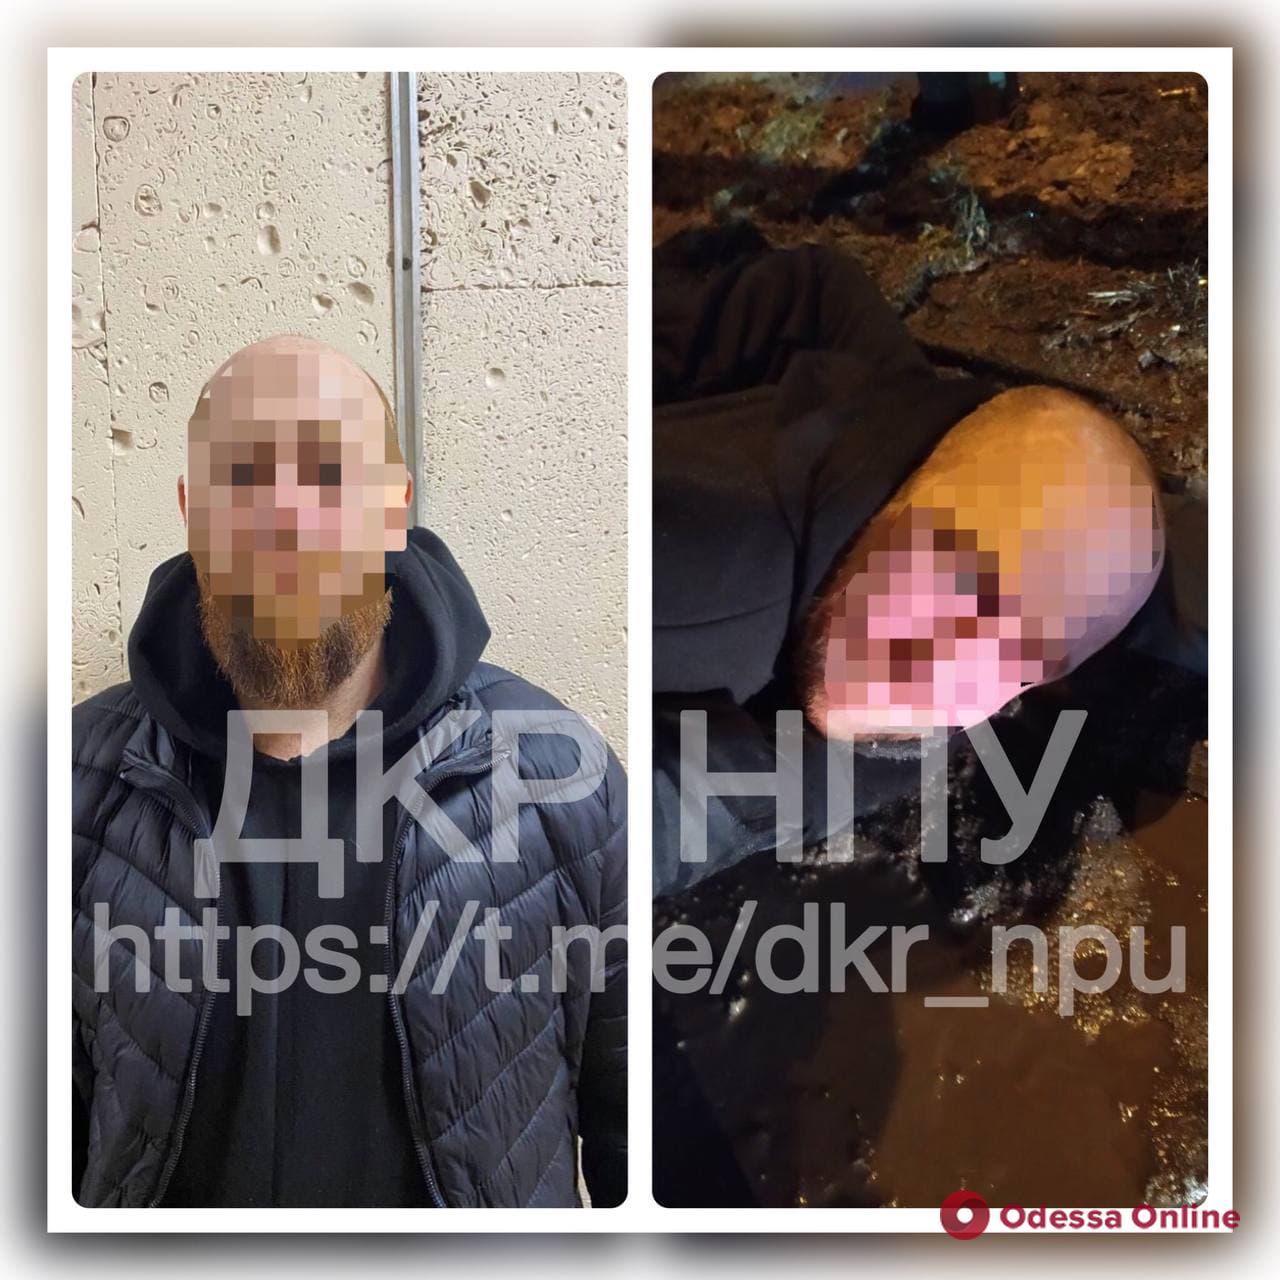 Сбрил бороду в целях конспирации: в Одессе задержали подозреваемого в похищении бизнесмена